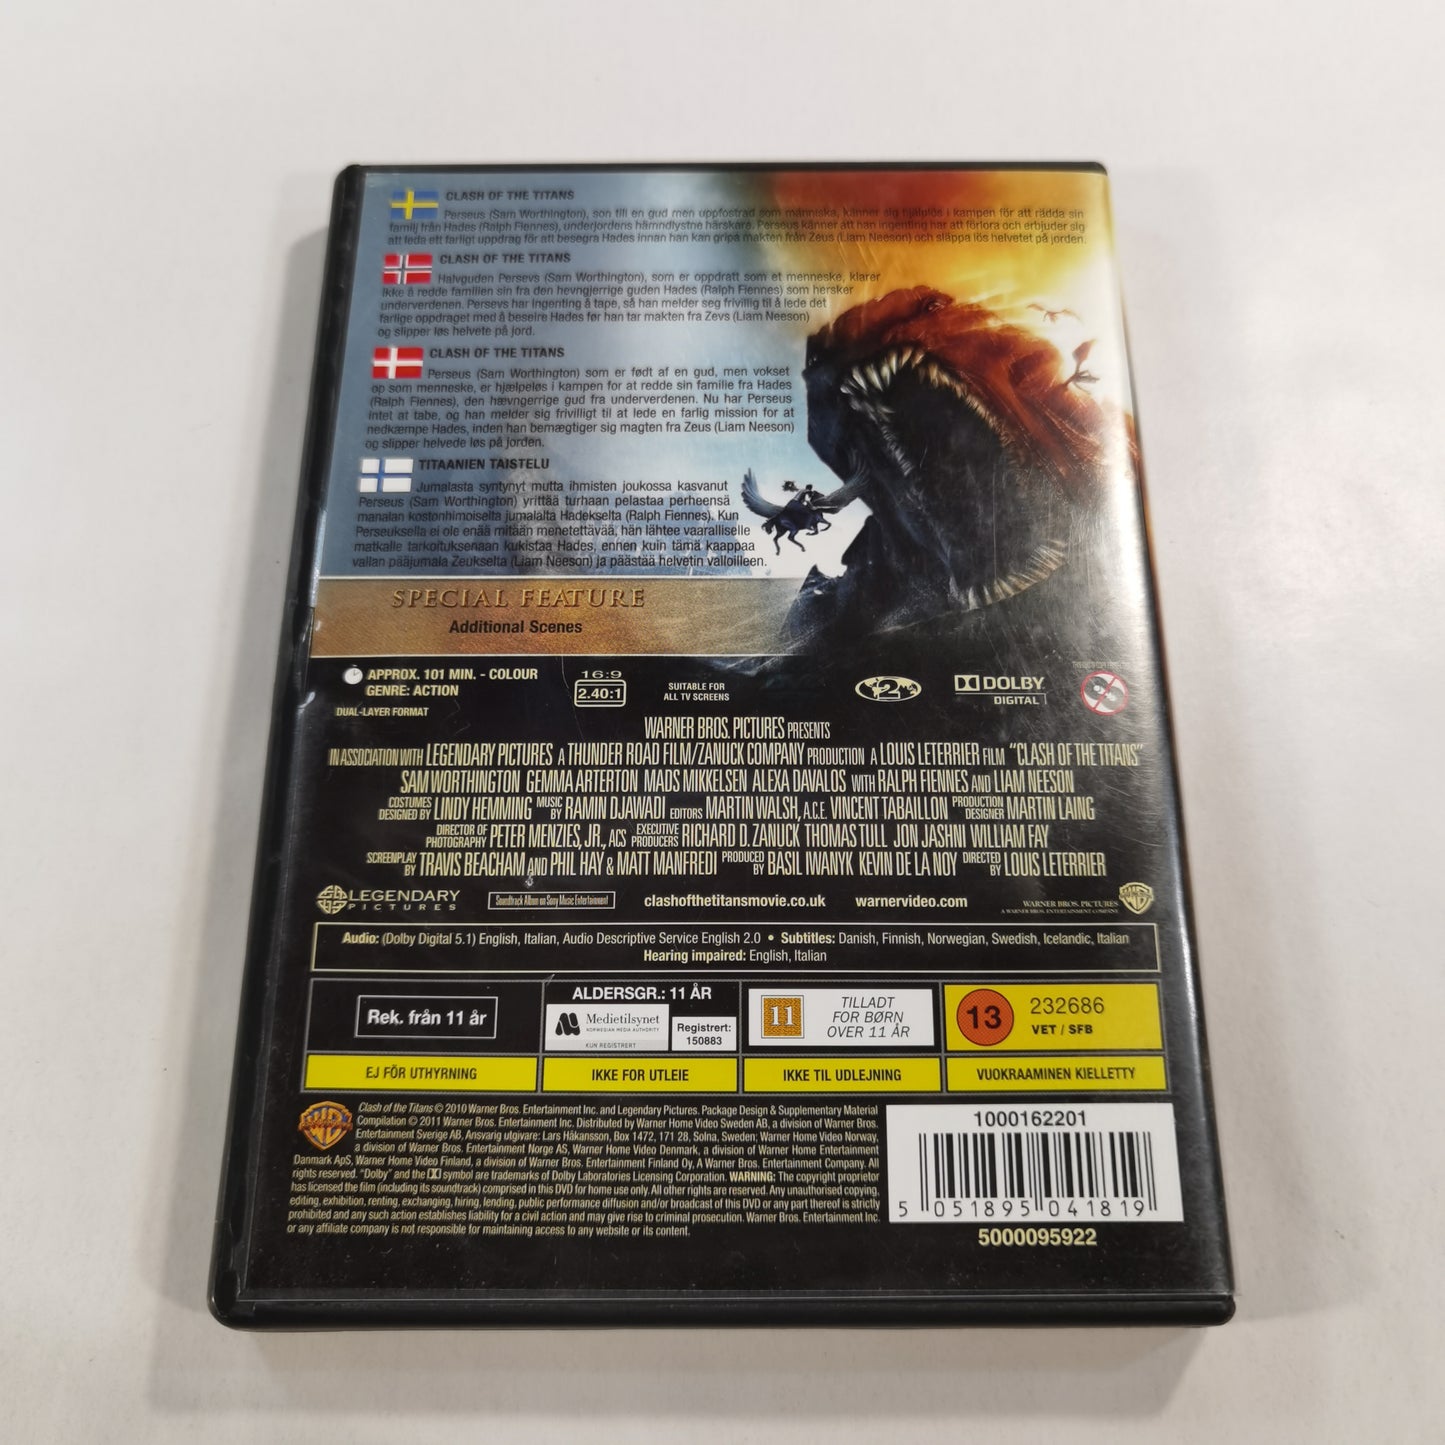 Clash of the Titans (2010) - DVD SE NO DK FI 2011